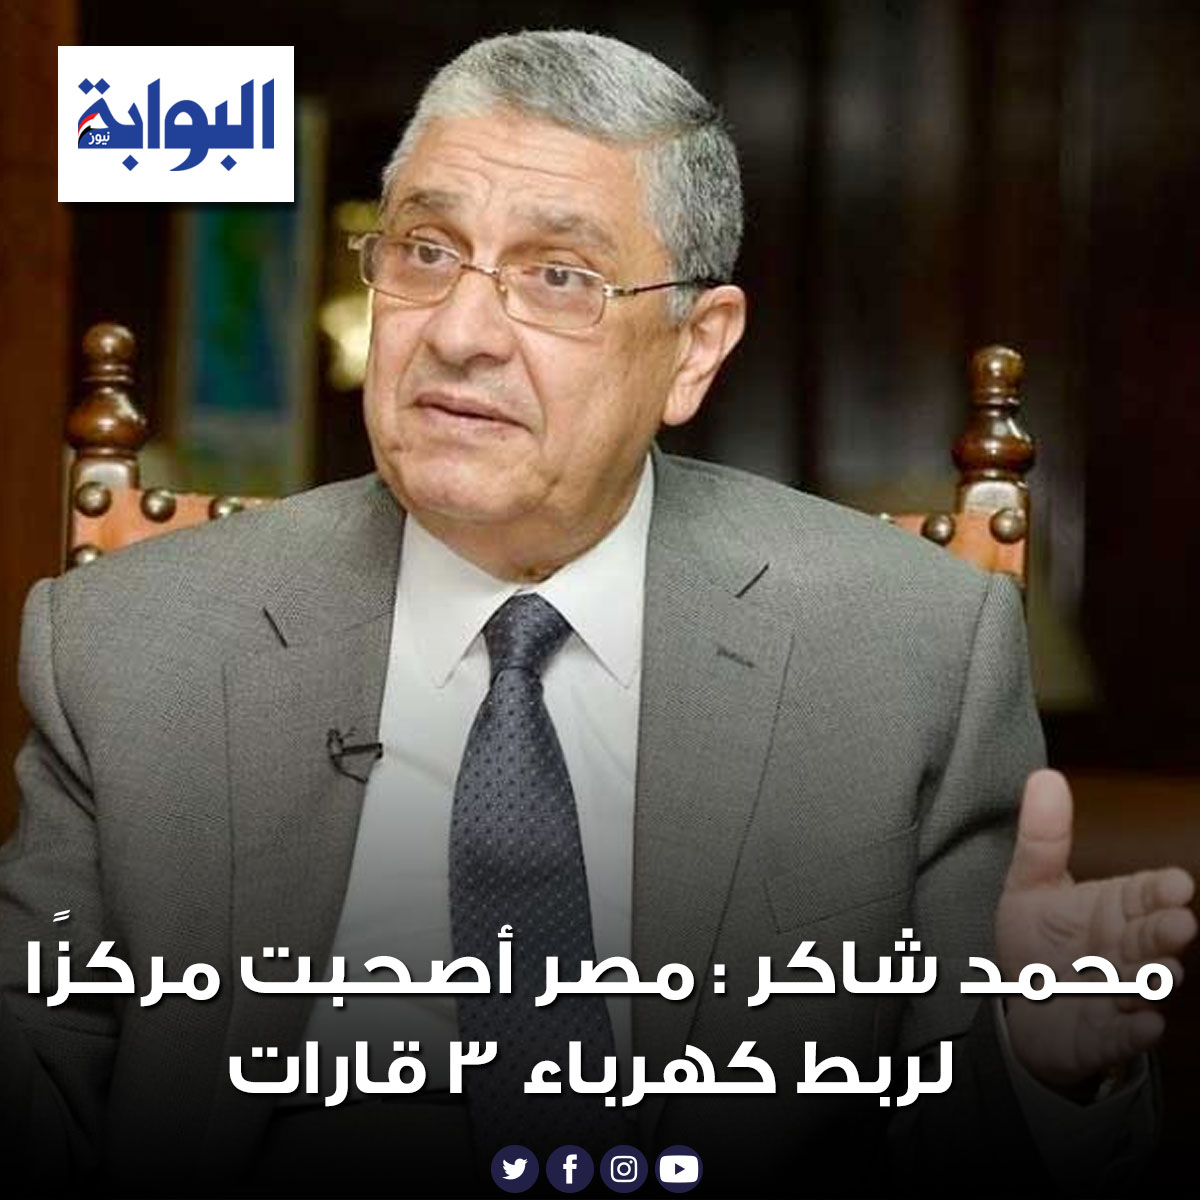 محمد شاكر مصر أصحبت مركزًا لربط كهرباء 3 قارات